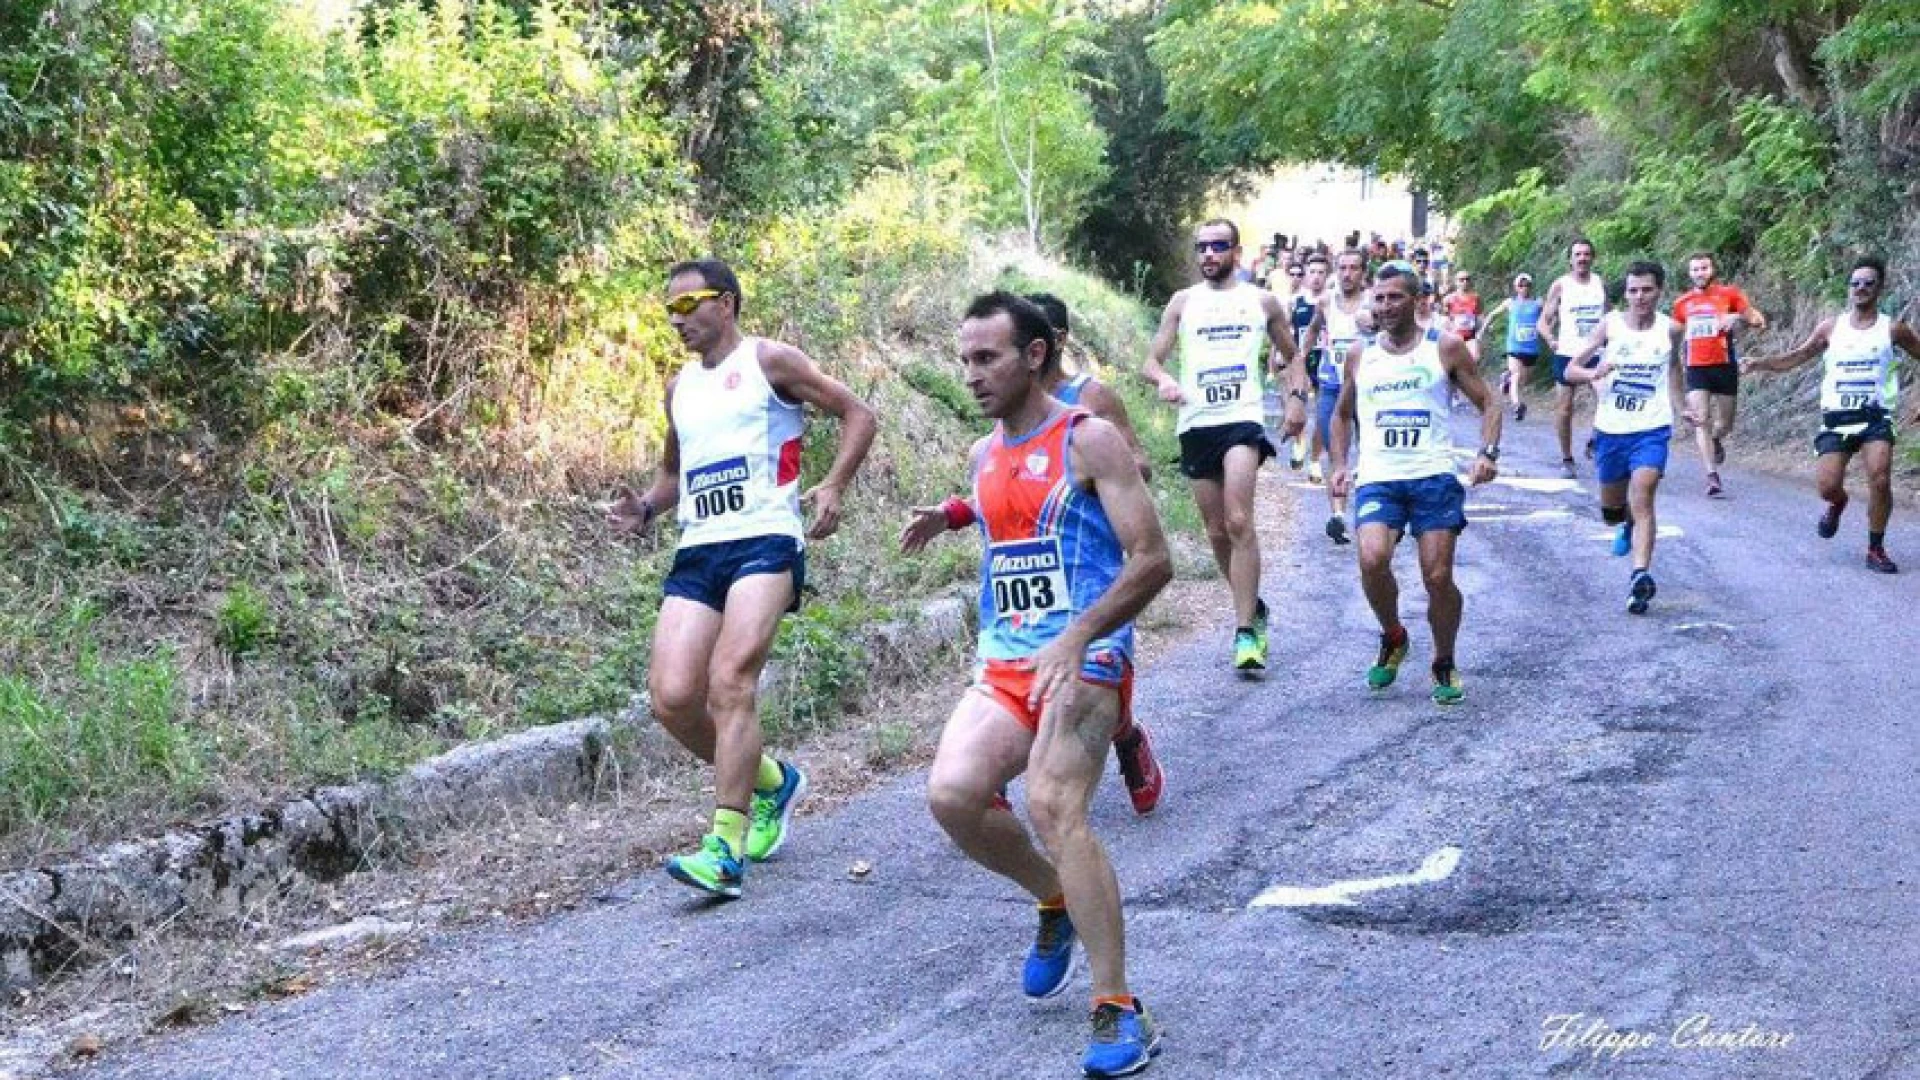 Atletica:"San Giacomo trail bosco"-1^ edizione- 31 luglio 2016. Successo per la gara podistica.